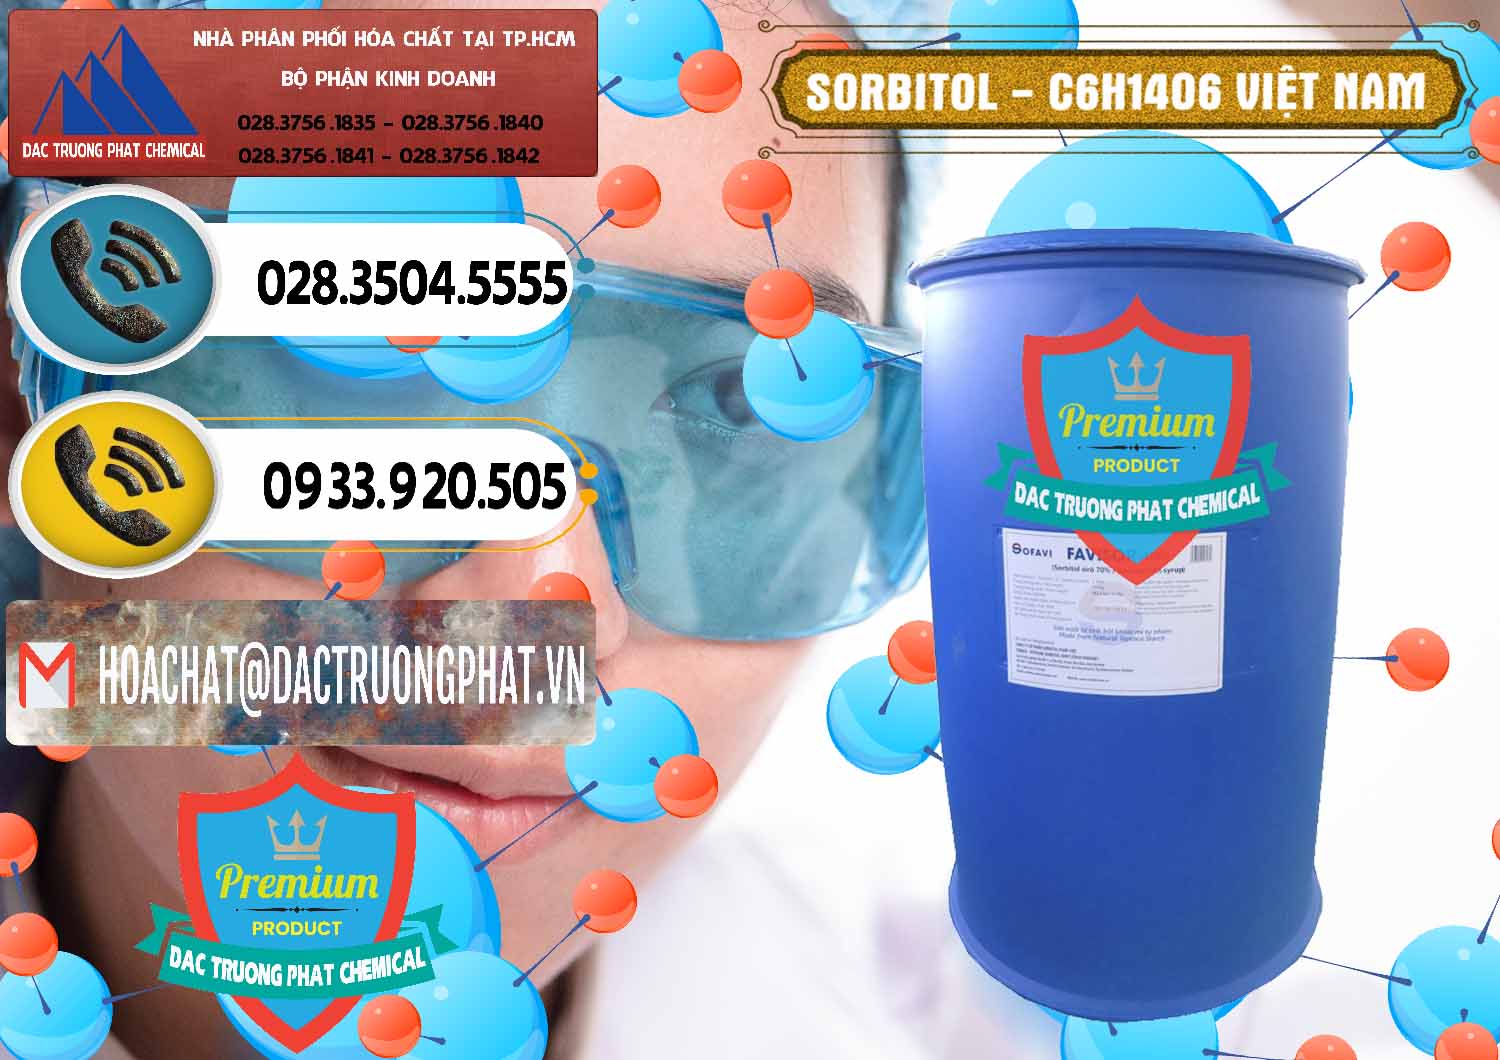 Nhà cung cấp & bán Sorbitol - C6H14O6 Lỏng 70% Food Grade Việt Nam - 0438 - Chuyên phân phối và kinh doanh hóa chất tại TP.HCM - hoachatdetnhuom.vn